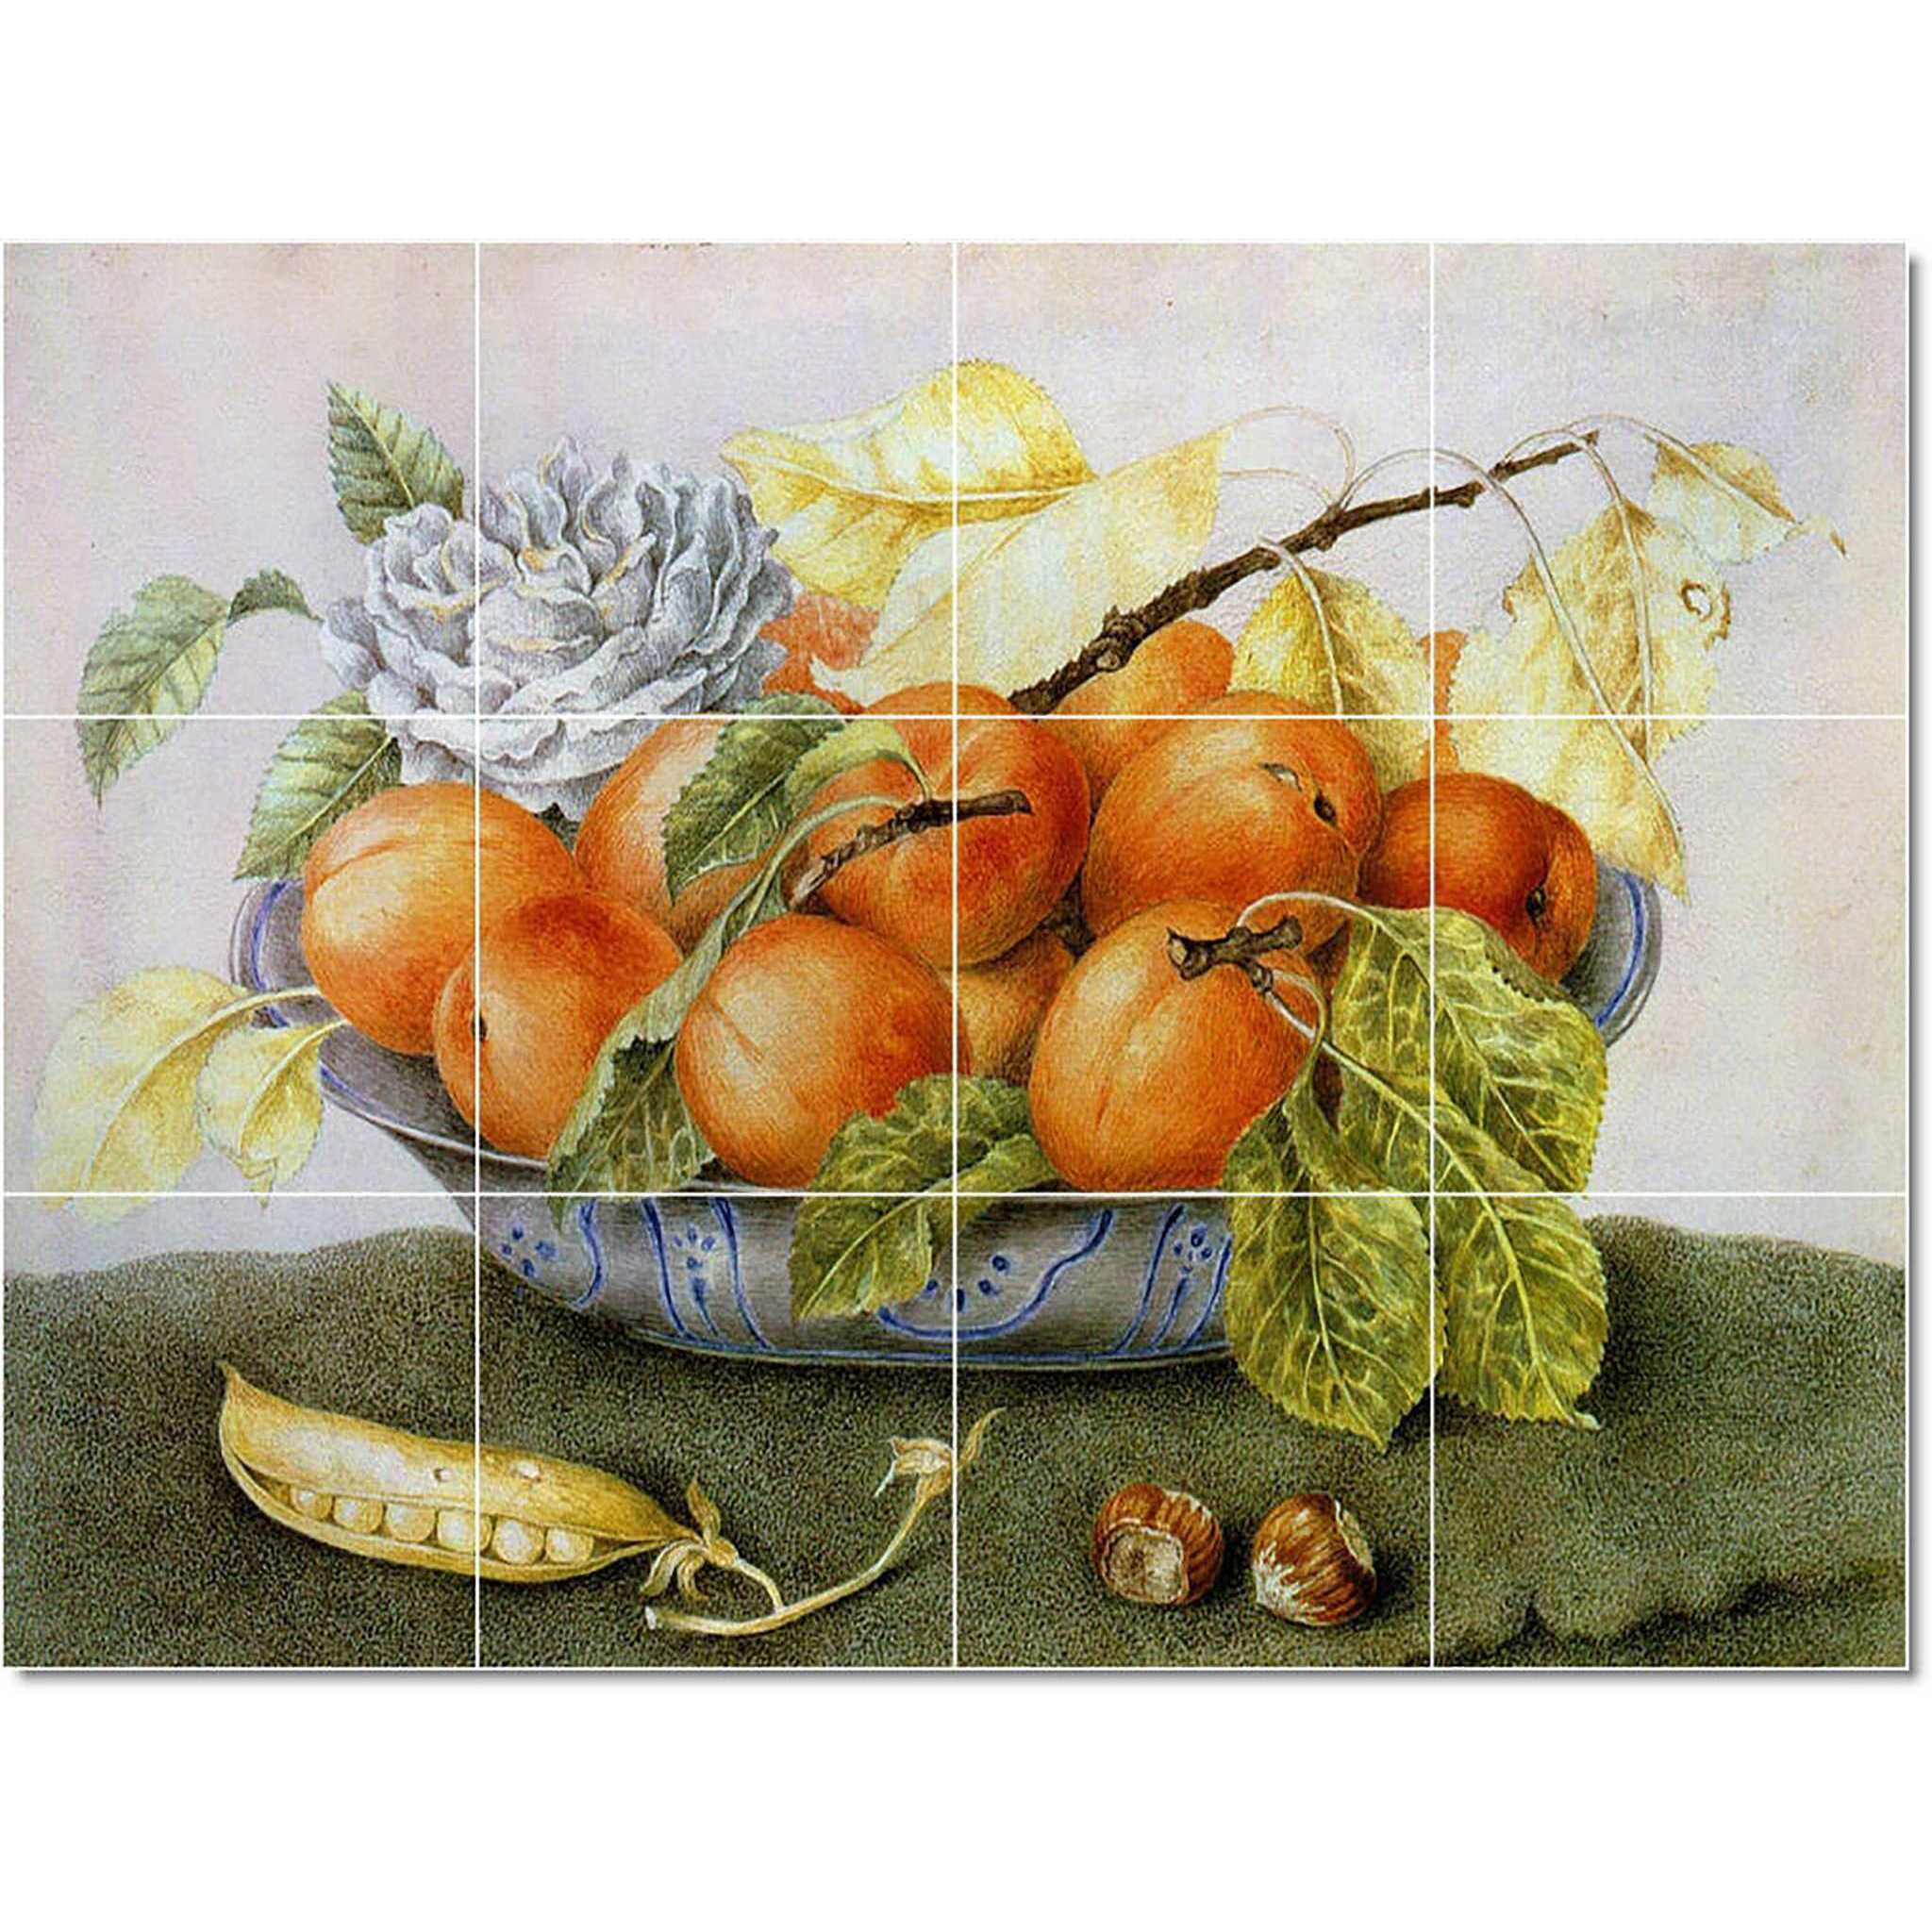 giovanna garzoni fruit vegetable painting ceramic tile mural p22453